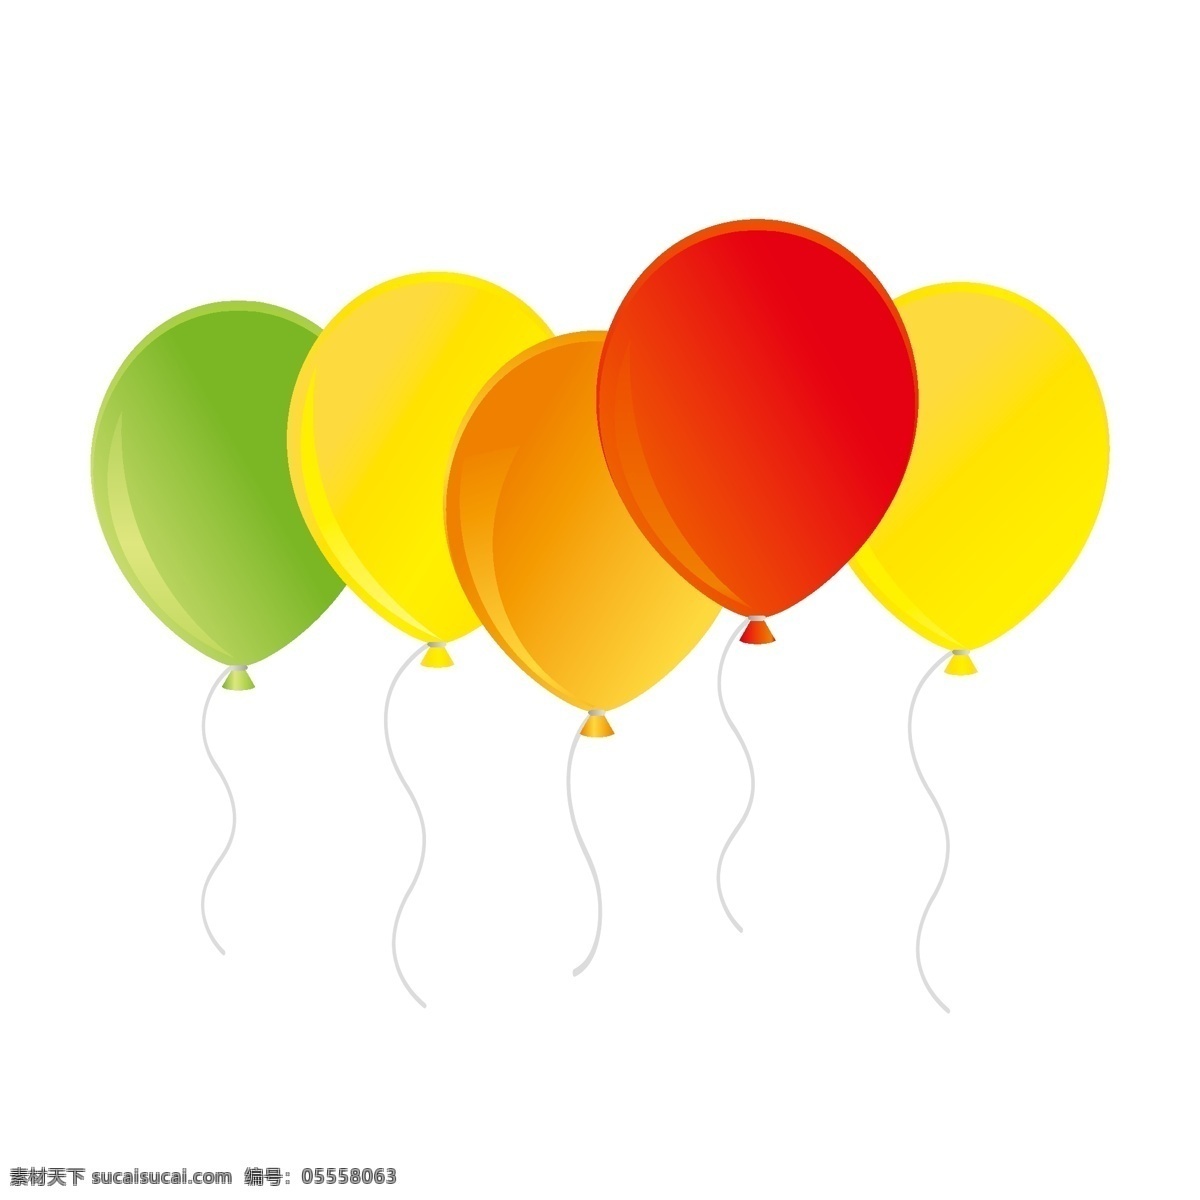 漂浮 气球 彩色 节日 装饰 元素 卡通 可爱 五彩斑斓